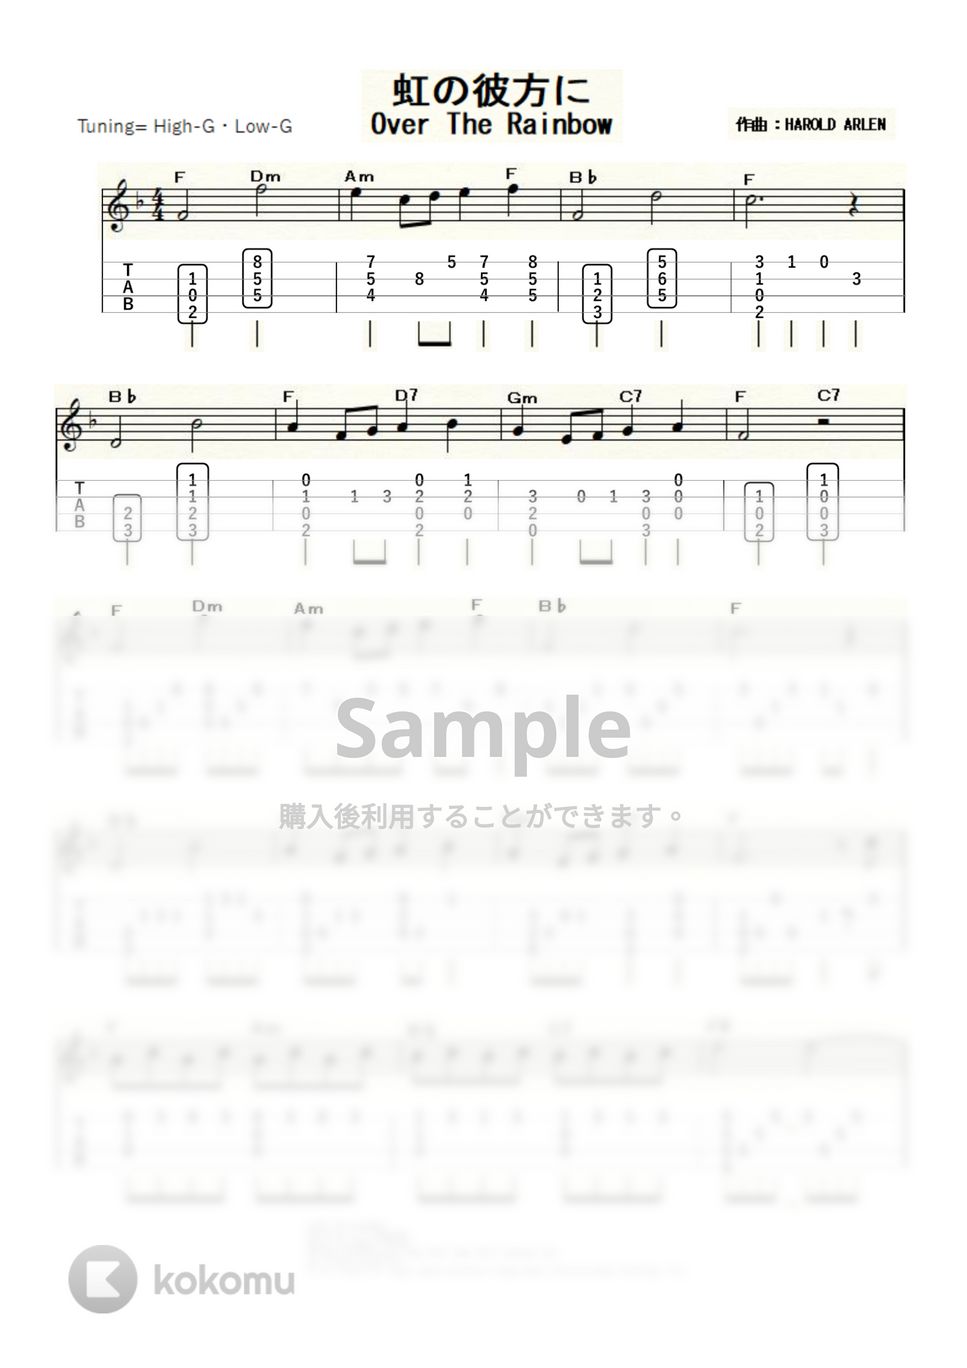 ジュディ・ガーランド - 虹の彼方に～OVER THE RAINBOW～ (ｳｸﾚﾚｿﾛ / High-G,Low-G / 中級) by ukulelepapa